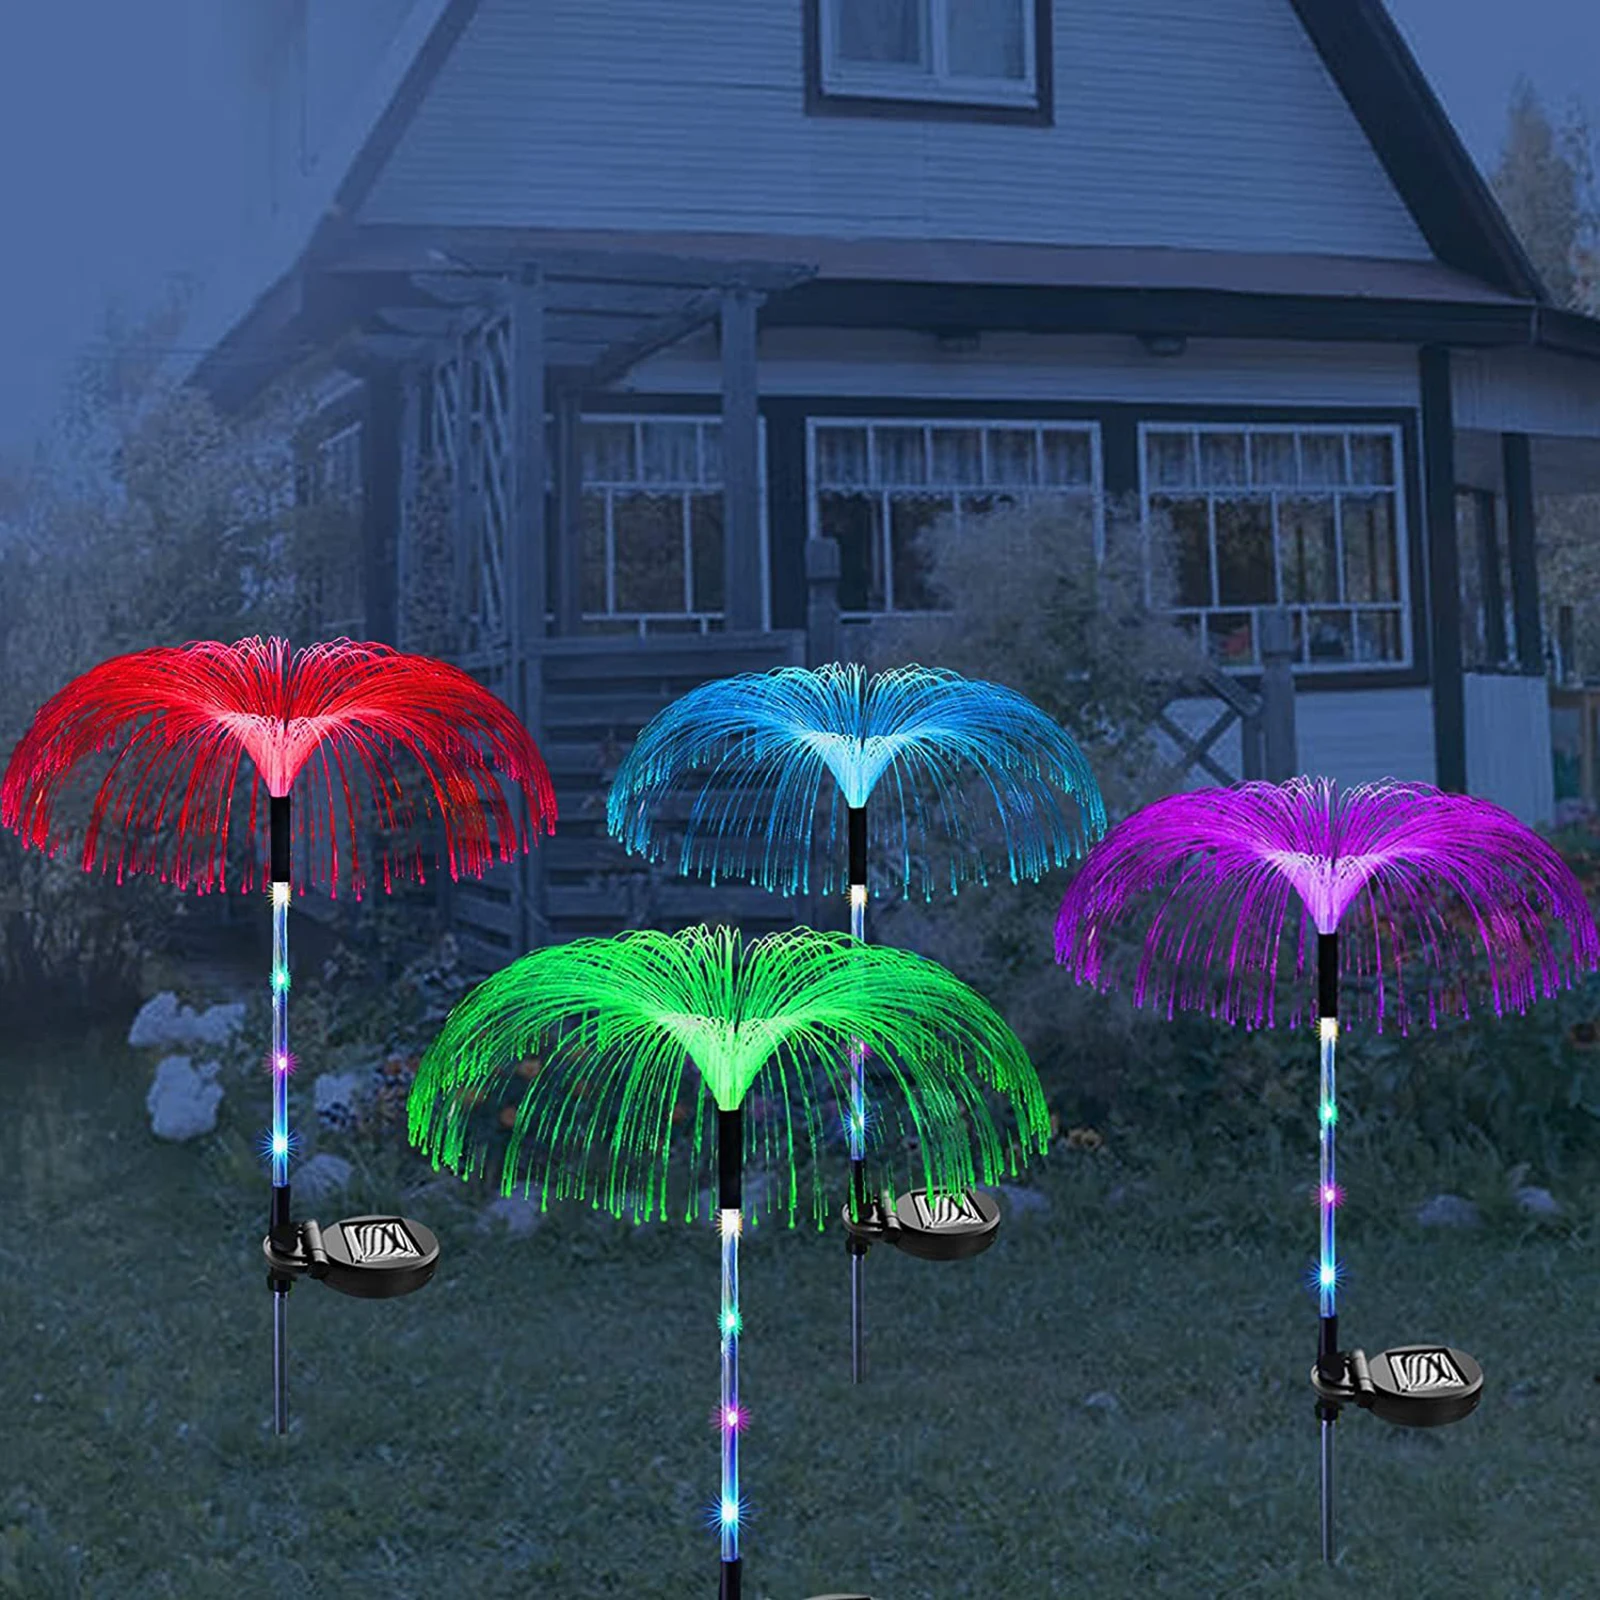 Солнечный светодиодный светильник в виде медузы, Солнечная садовая лампа, наружные водонепроницаемые декоративные светильники IP65 с 7 цветами RGB